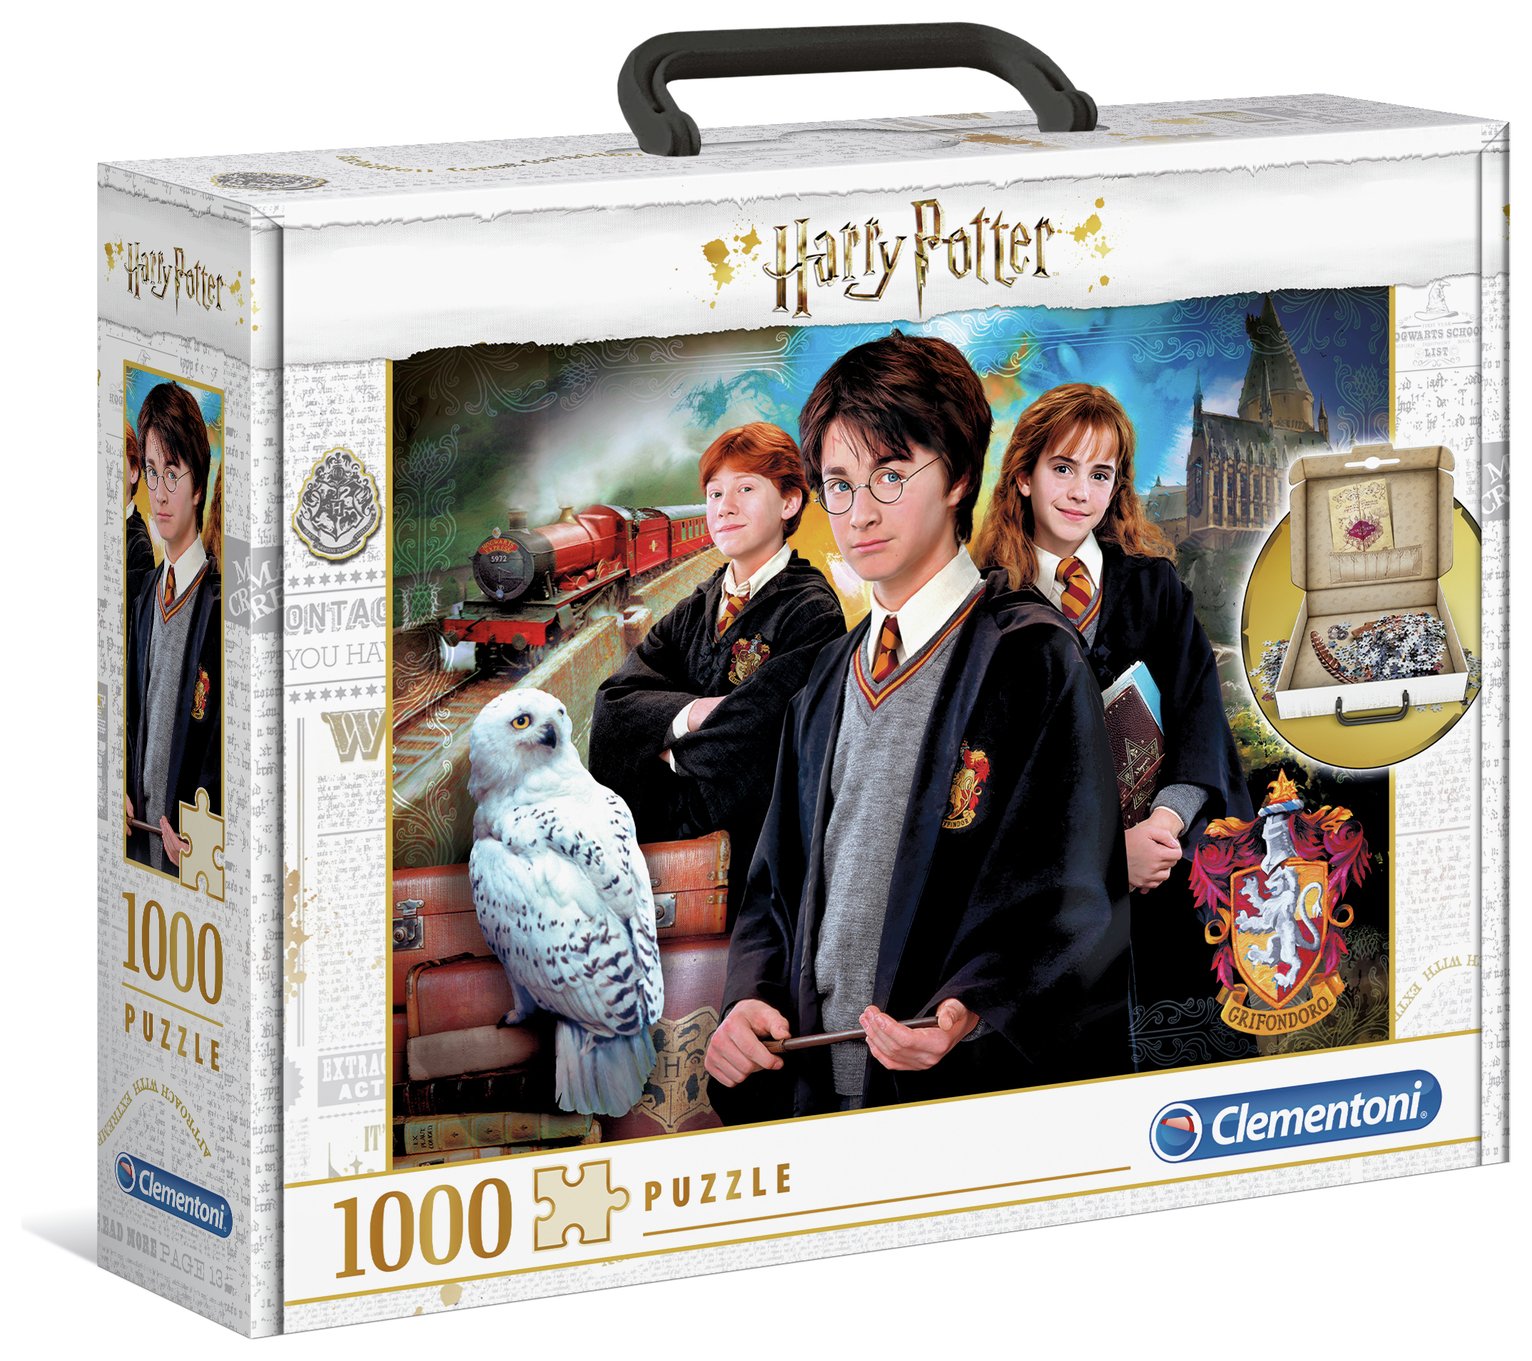 Clementoni Harry Potter 1000 Piece Briefcase Jigsaw Puzzle 